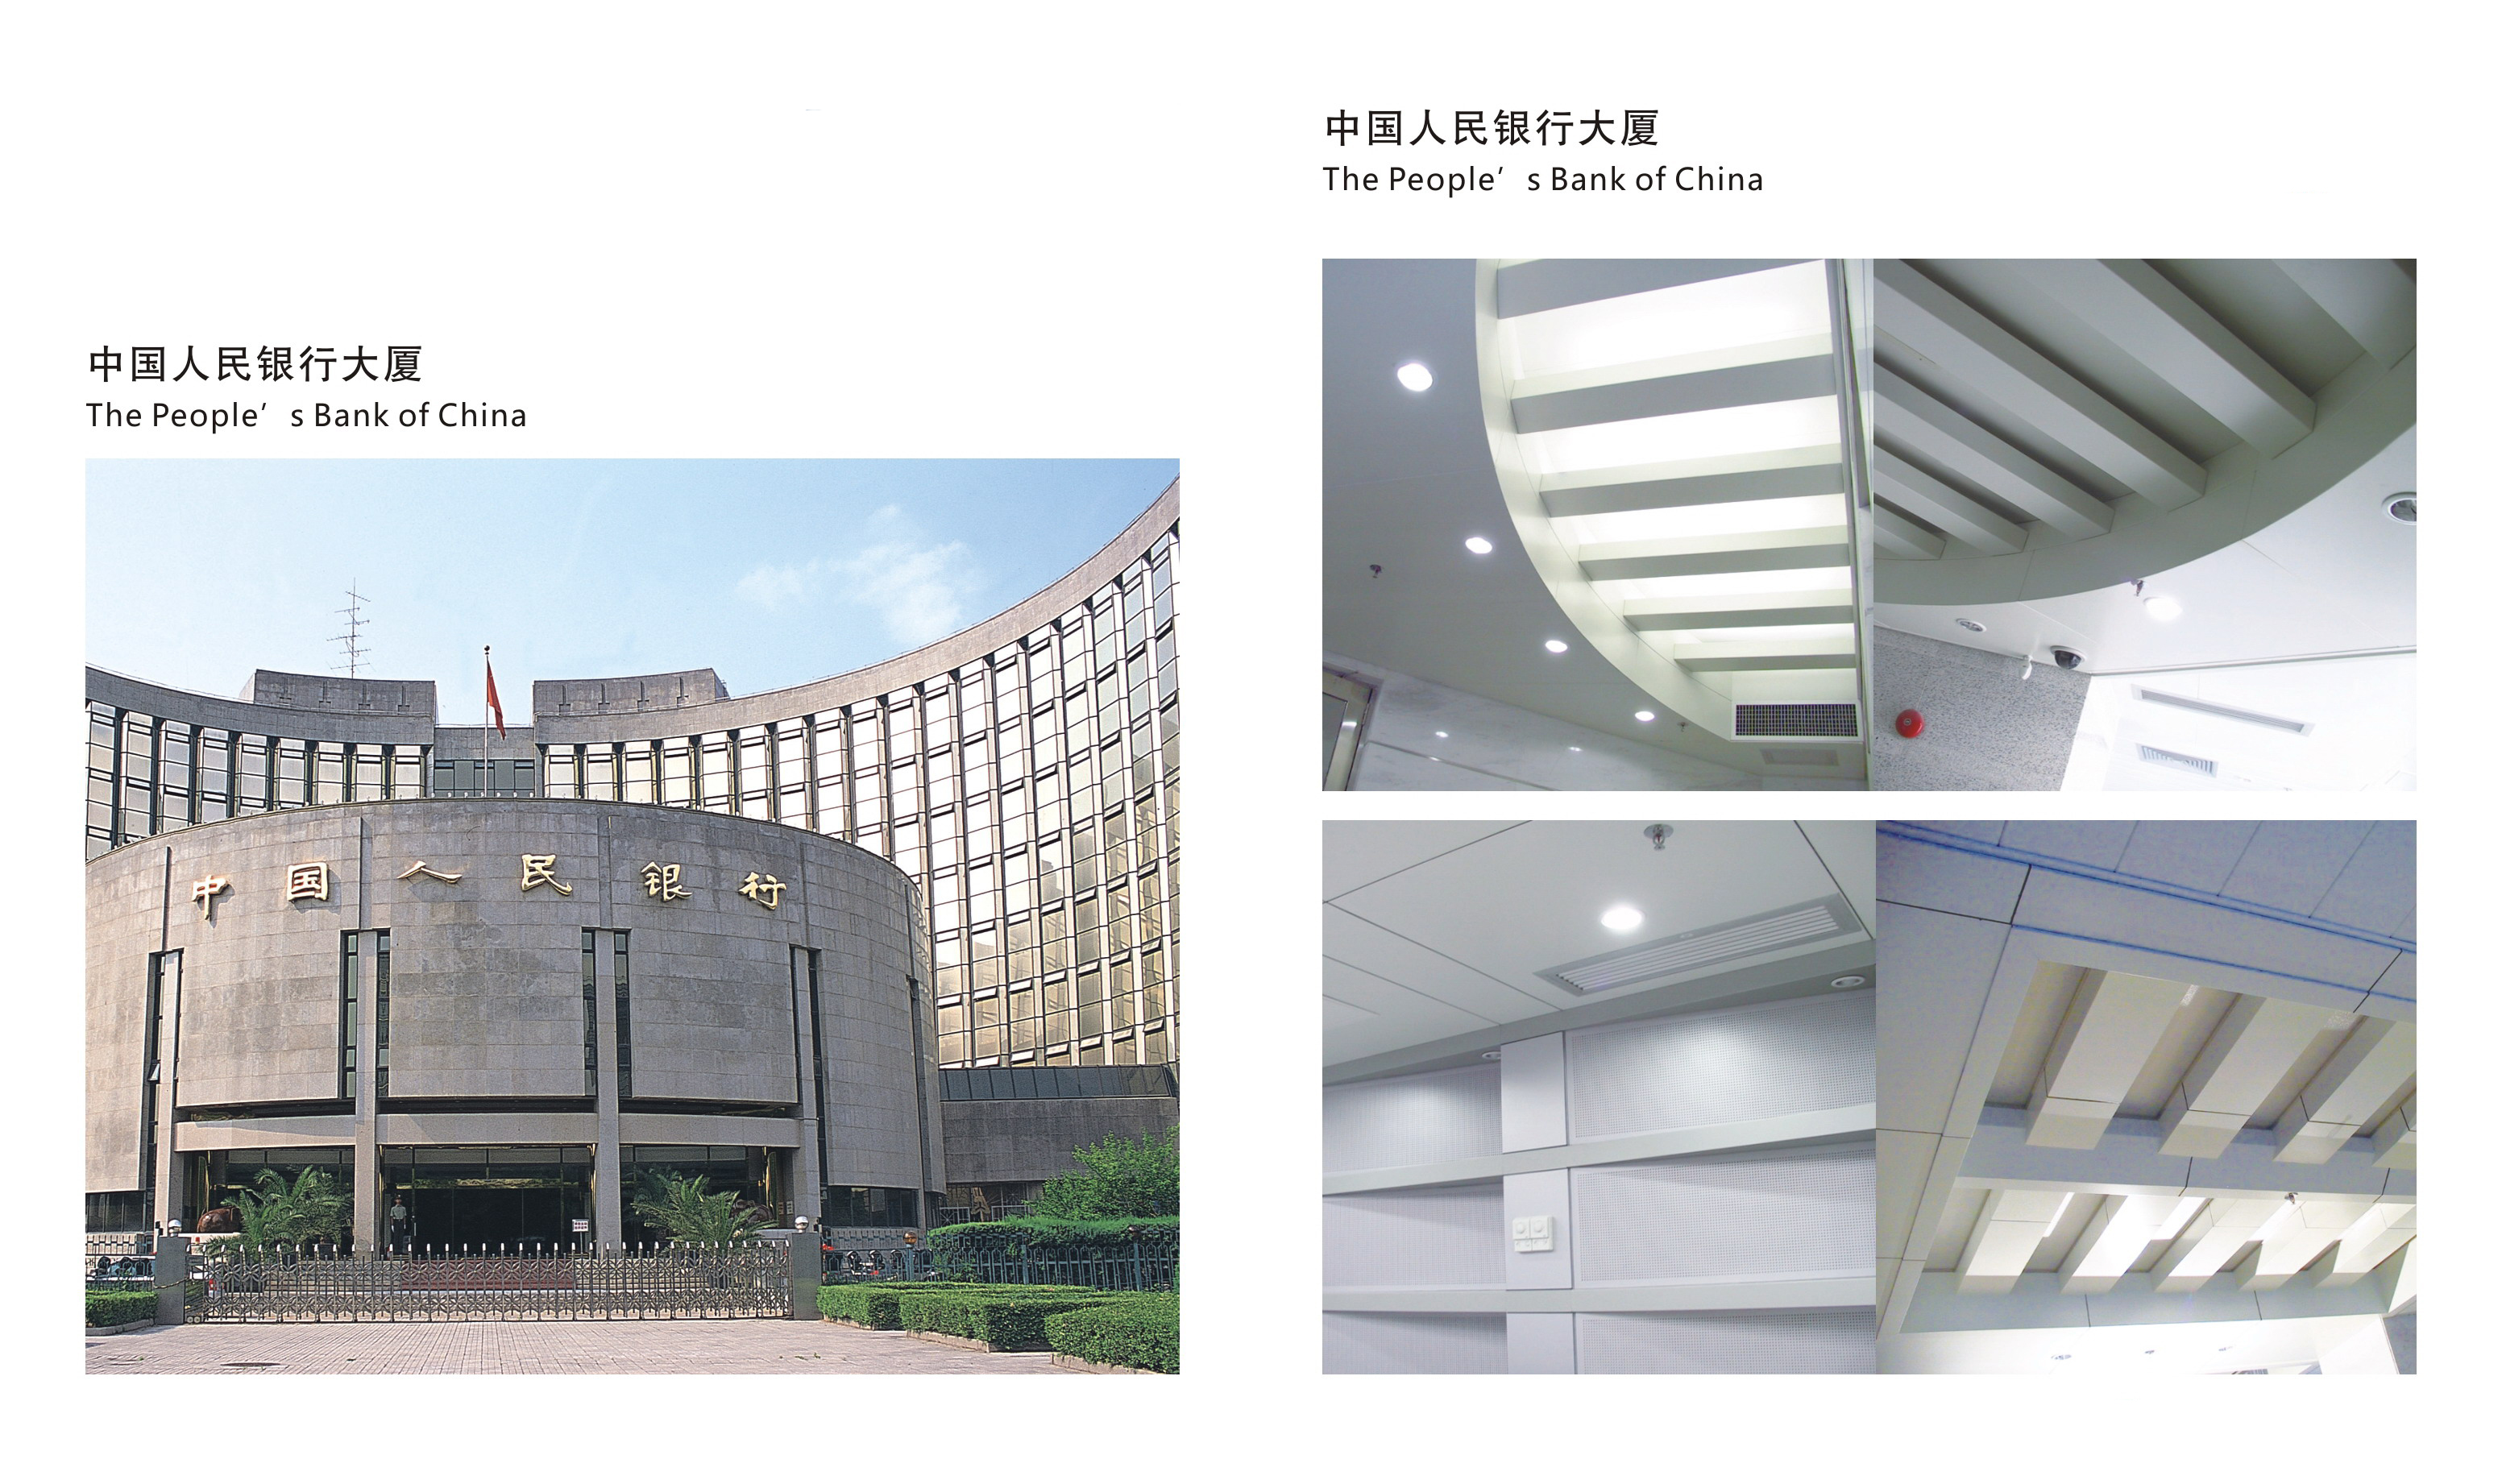 弧形铝蜂窝板幕墙中国人民银行大厦